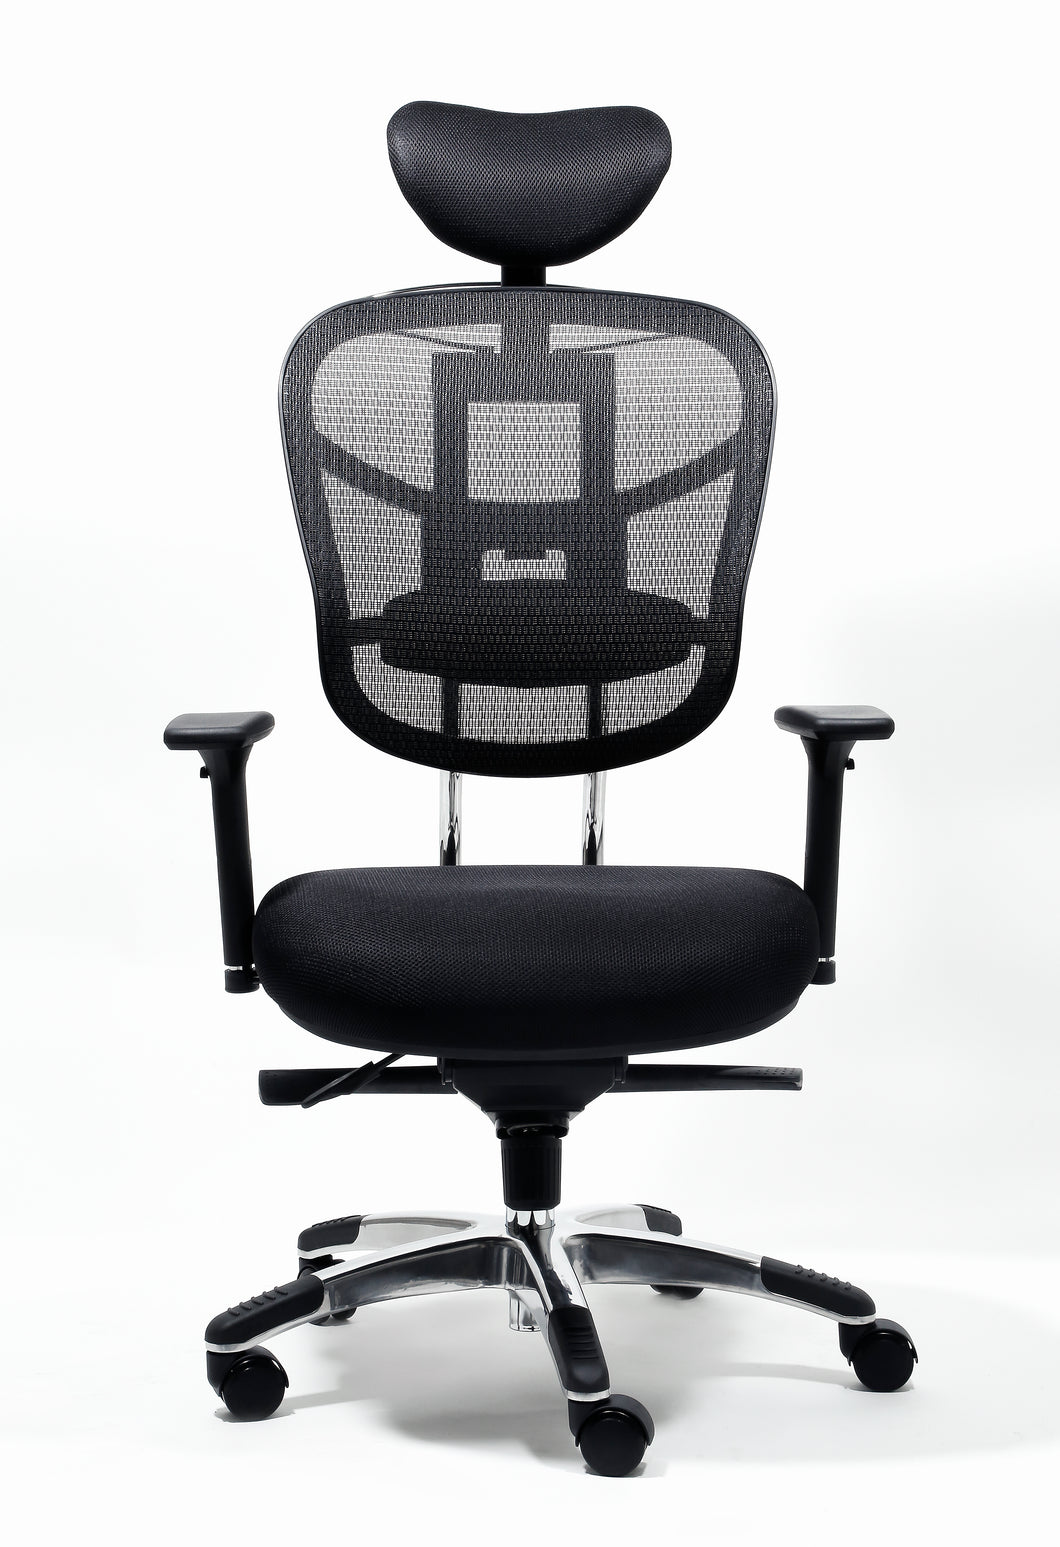 4104 Black Mesh Back Desk Chair w/ Headrest & Seat Slider $449.95